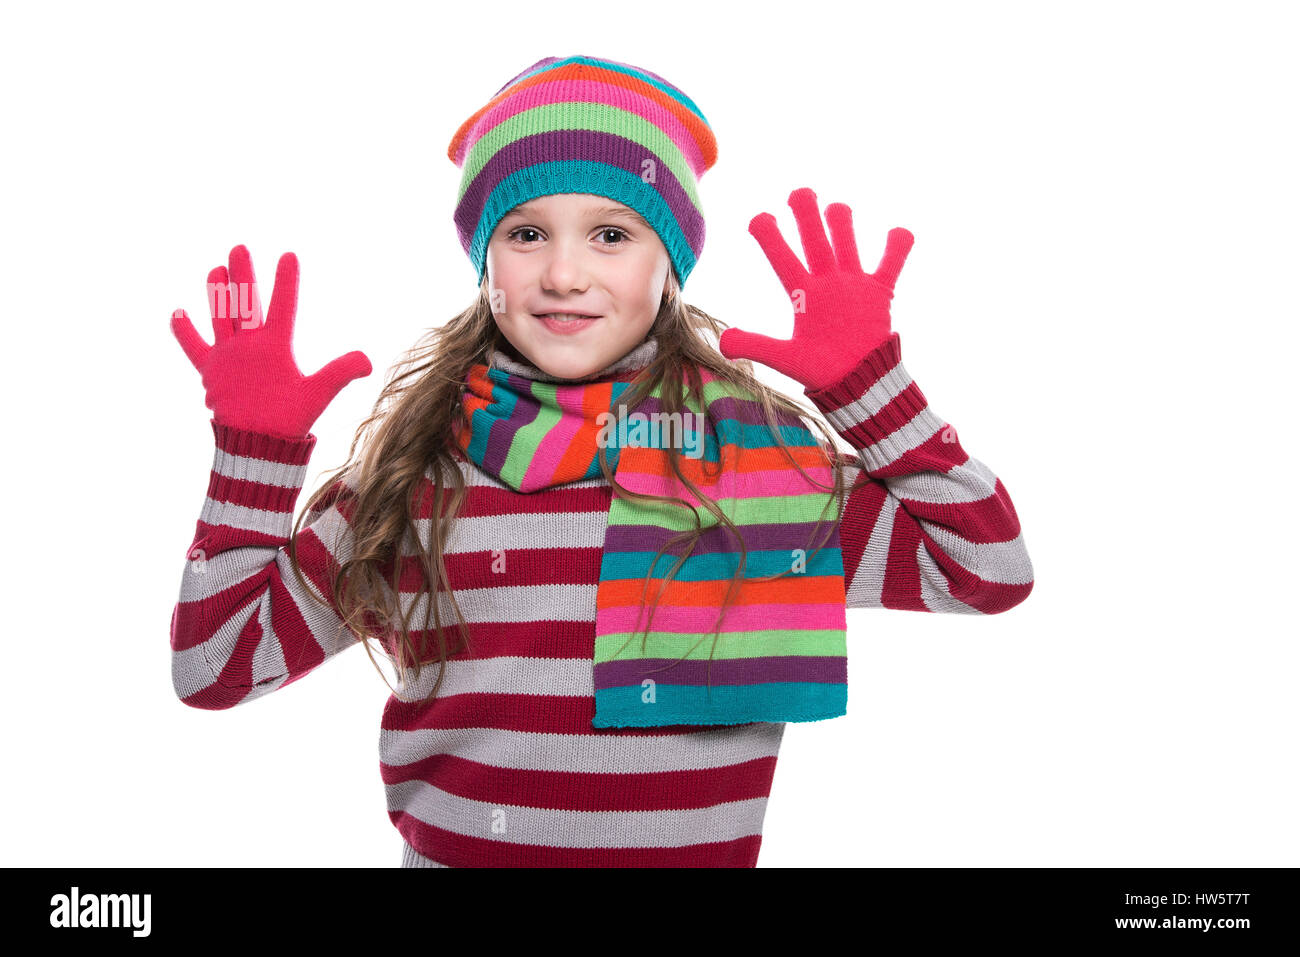 She s wearing her hat. Перчатки шарфы на белом фоне. Девочка одевает шарф. Девочка 10 лет в шапке шарф перчатки. Испачканные садовые перчатки на прозрачном фоне.